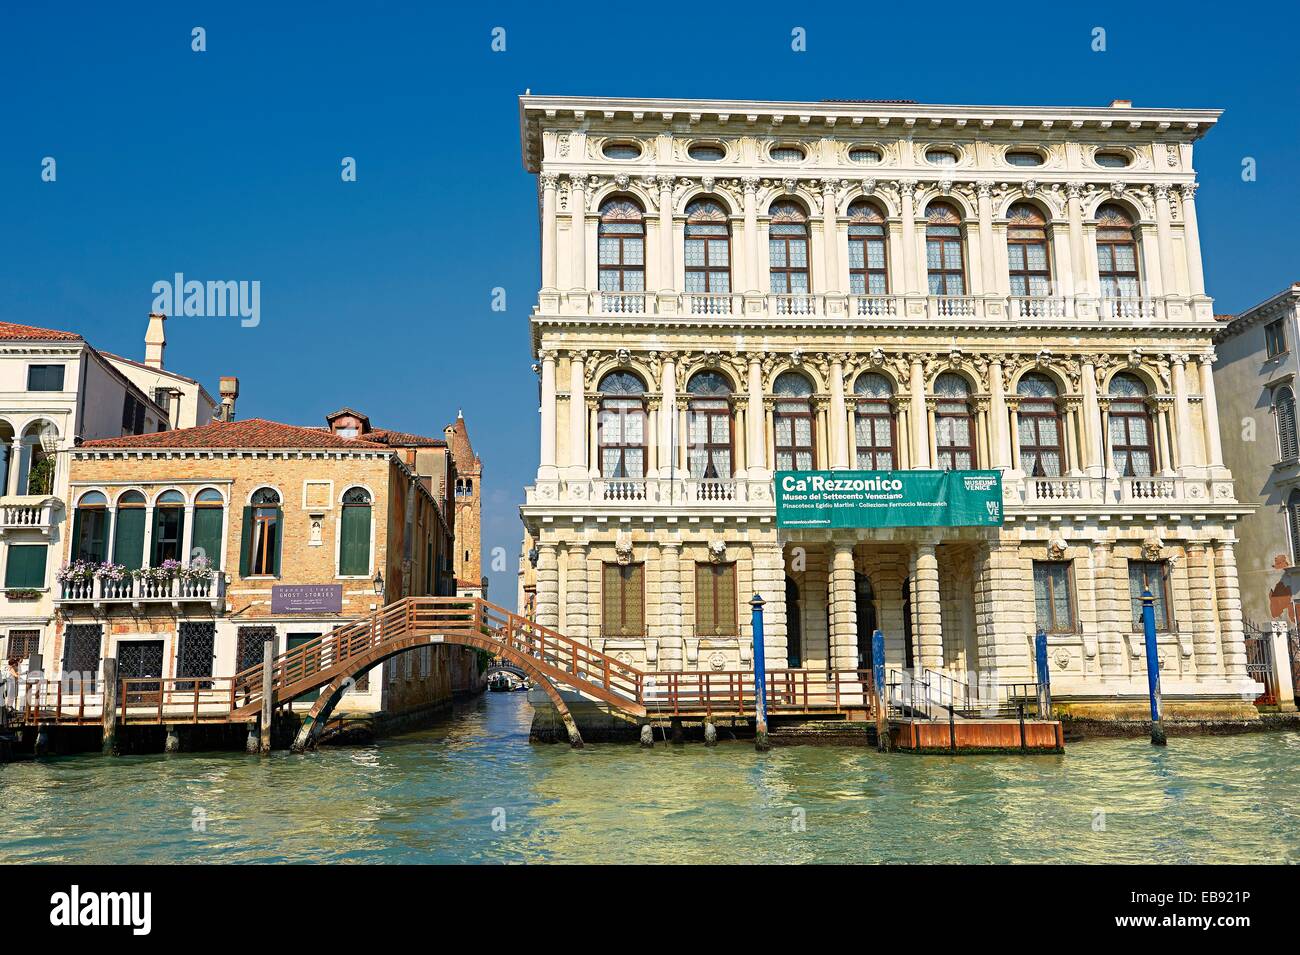 El Palacio Ca'Rezzonico construido en 1649 por Baldassarre Longhena en estilo barroco en el Gran Canal Venecia Foto de stock